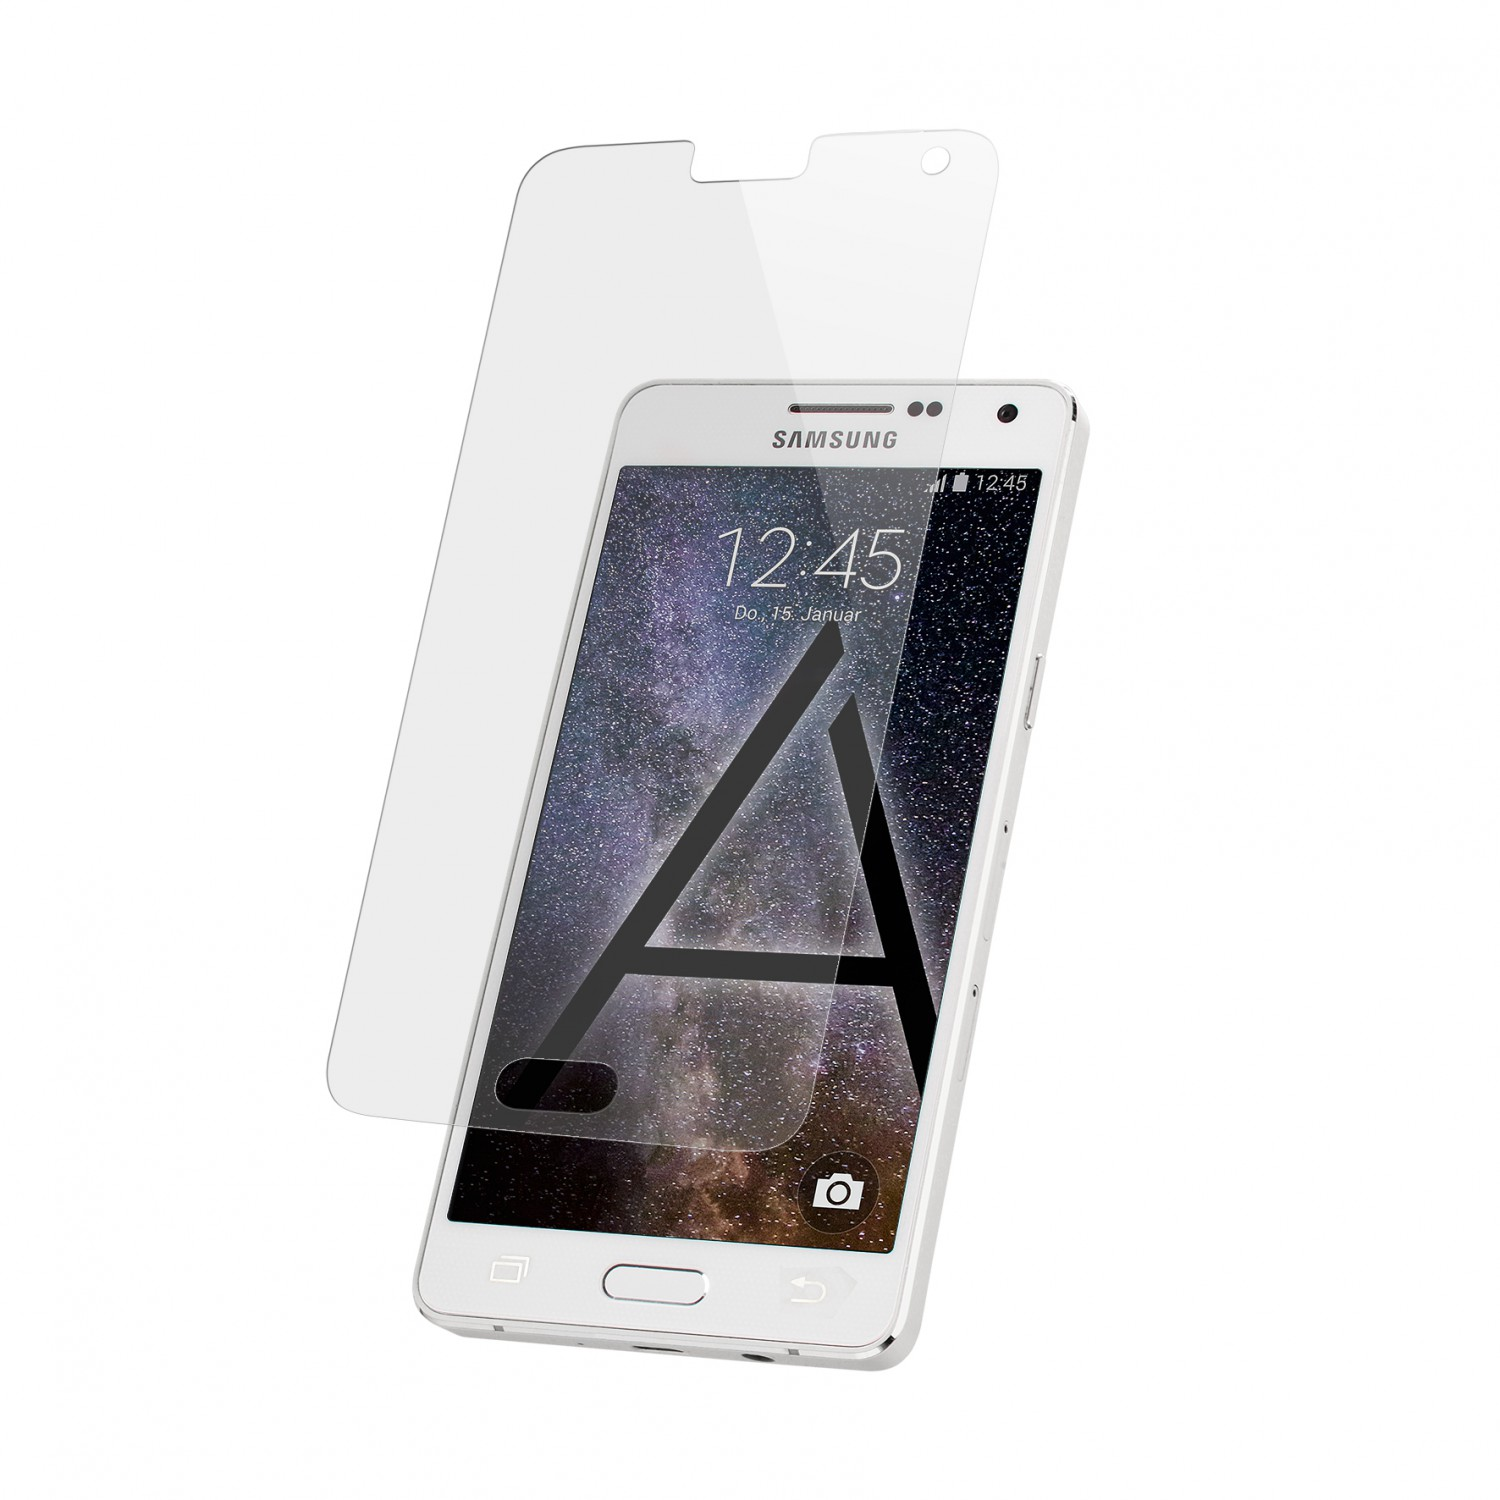 ARTWIZZ SecondDisplay (2er Pack) A5 Galaxy Samsung (2015)) Displayschutz(für